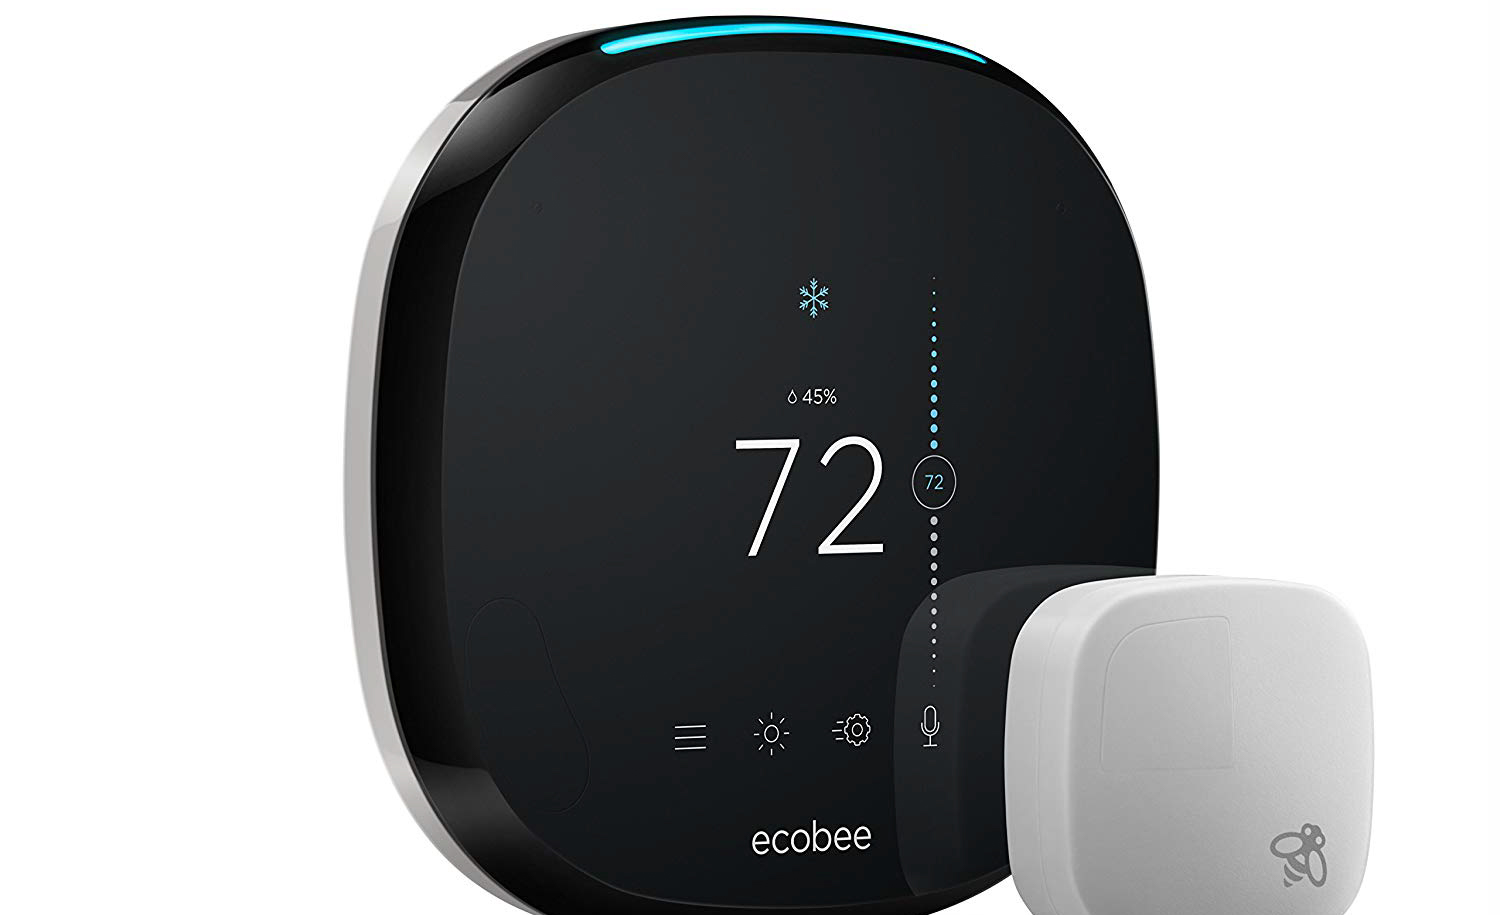 ecobee4 smart thermostat. Image: ecobee.